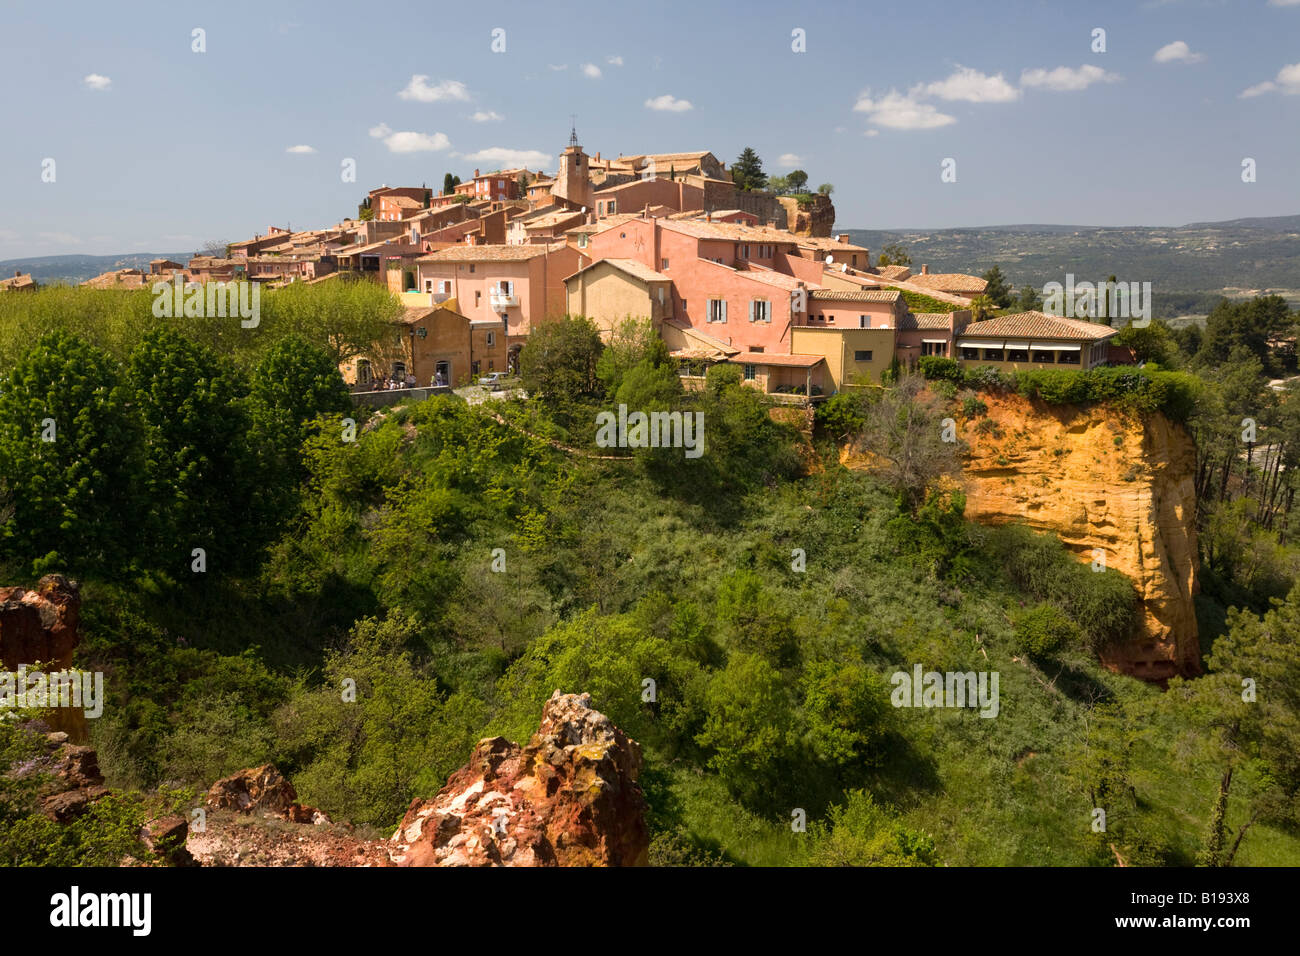 Ein Blick auf das Dorf Roussillon (Vaucluse - Frankreich). Dorf de Roussillon 84220 (Vaucluse 84 - Frankreich). Stockfoto